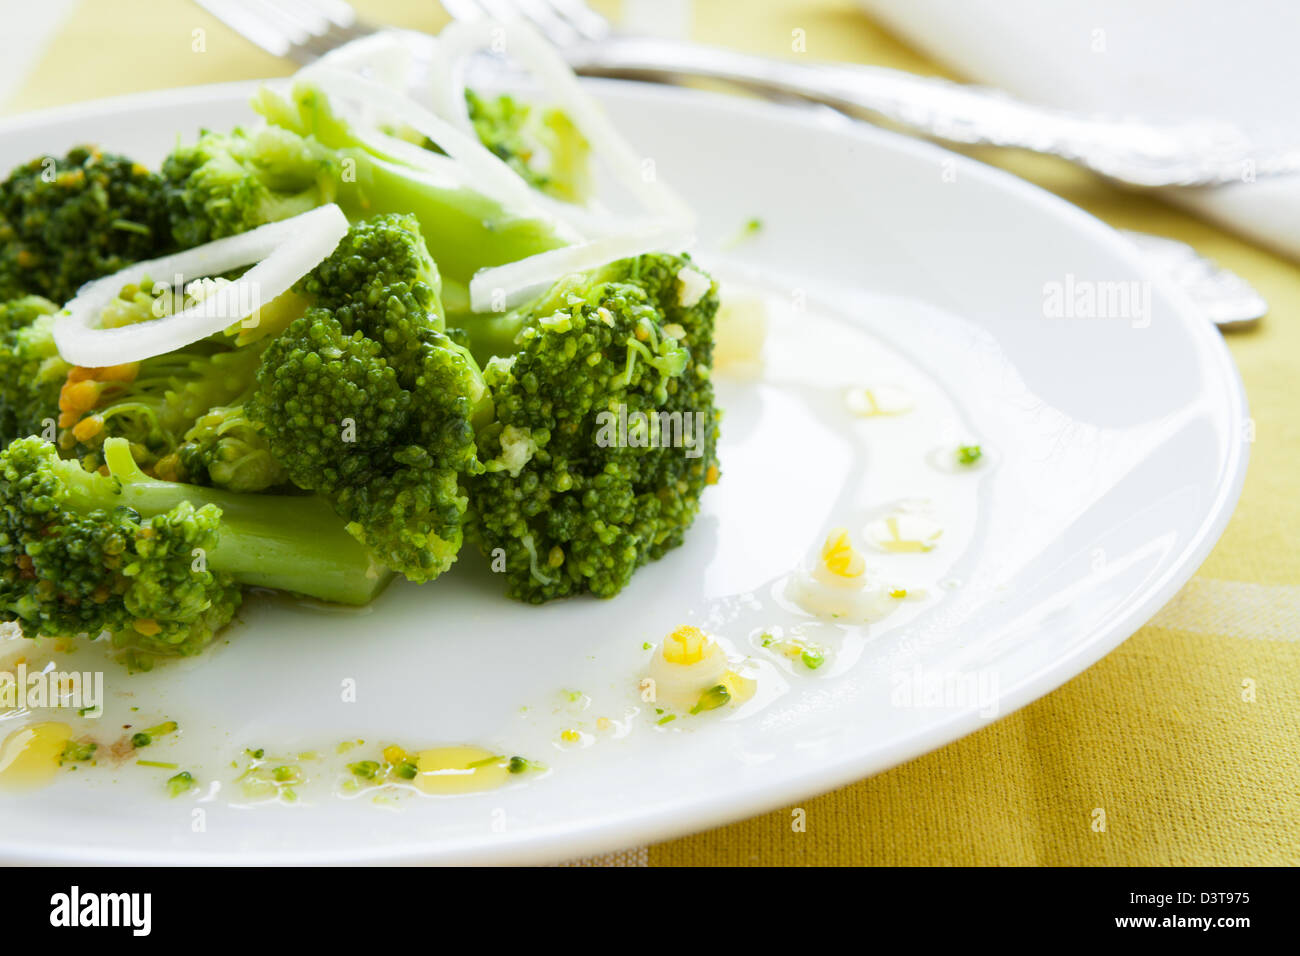 Brasato di broccoli e cipolle, primo piano Foto Stock